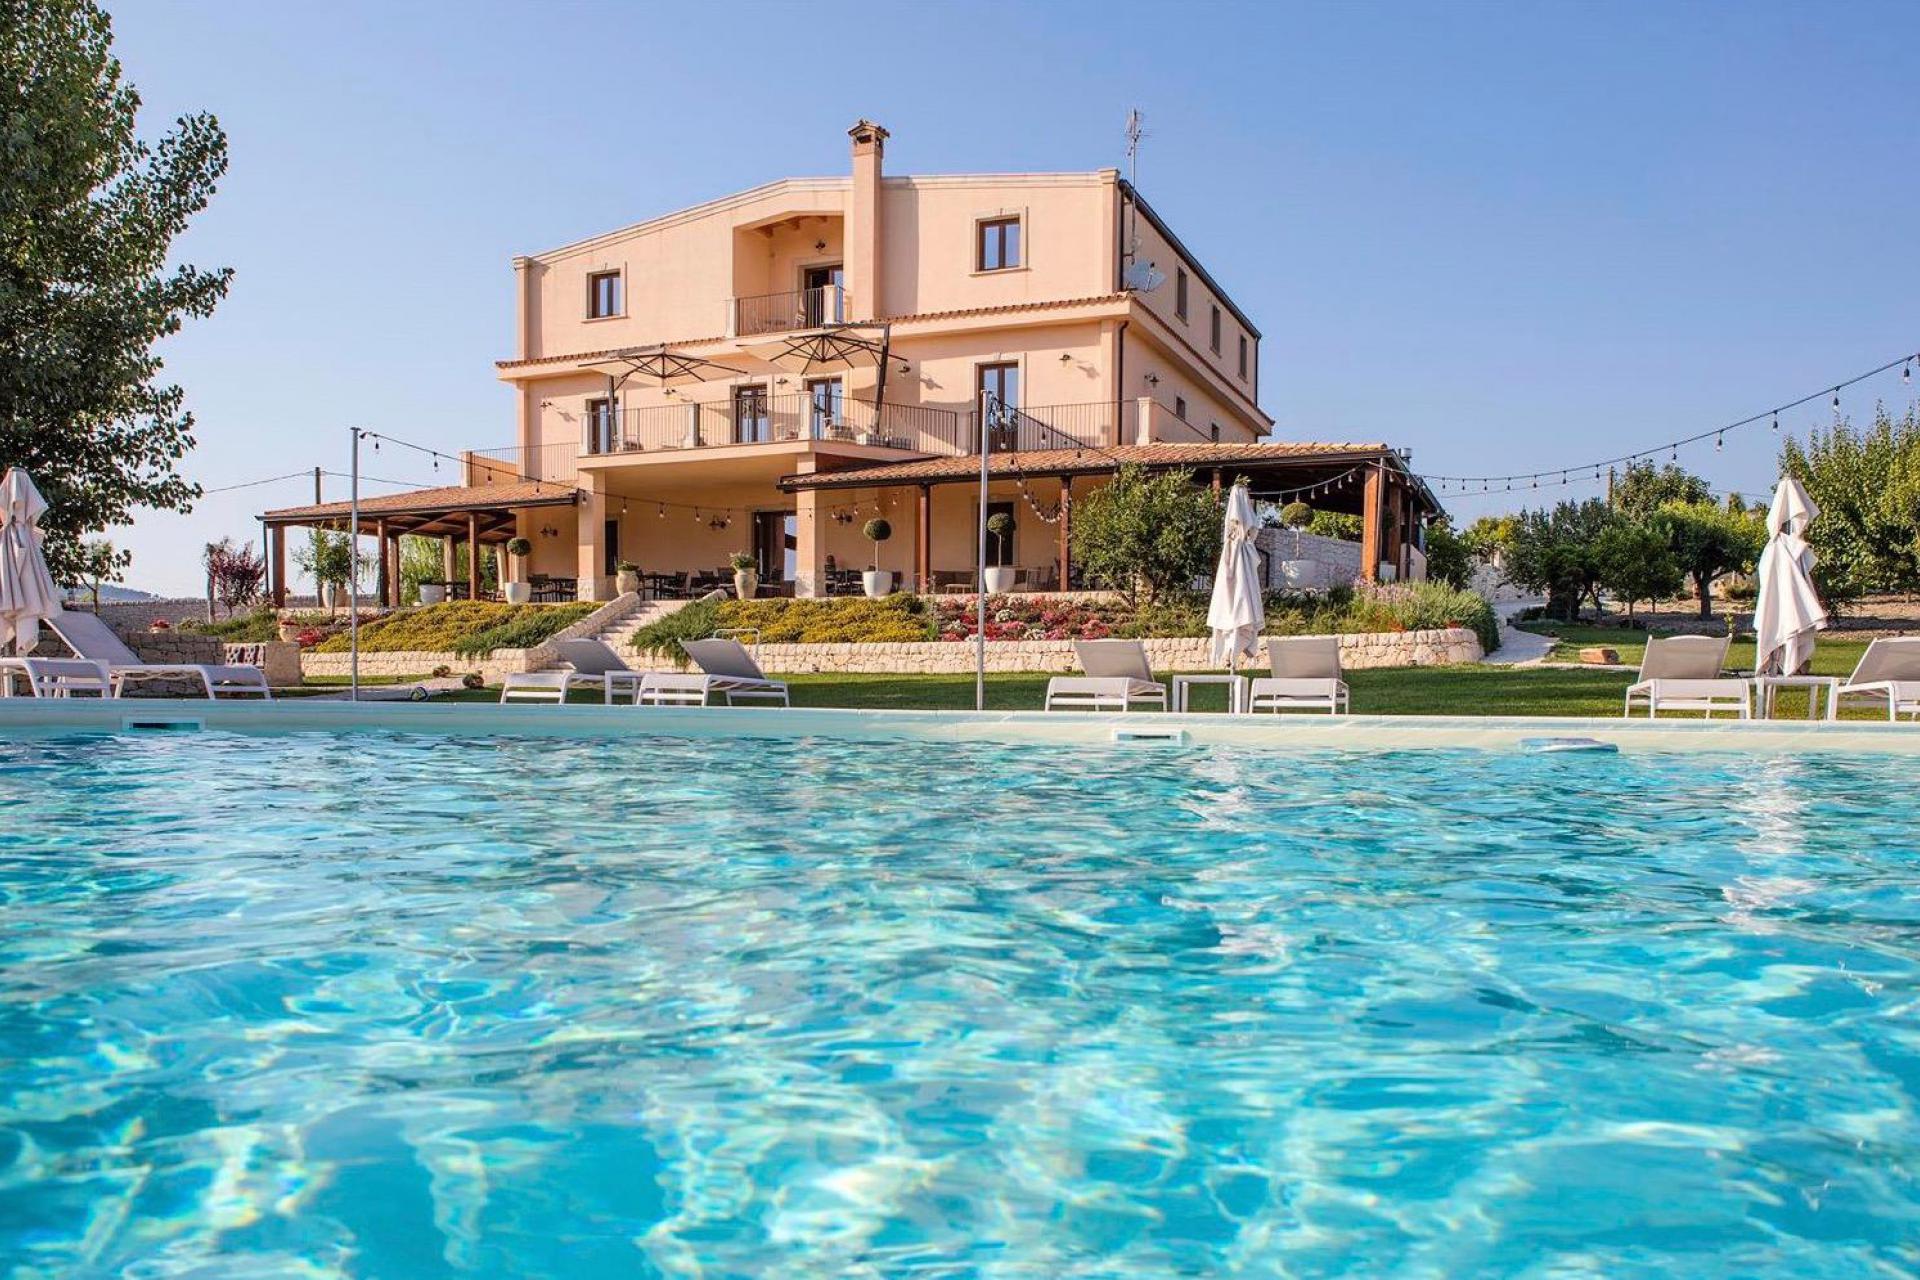 Agriturismo Sicilia Agriturismo adatto alle famiglie con bellissima piscina